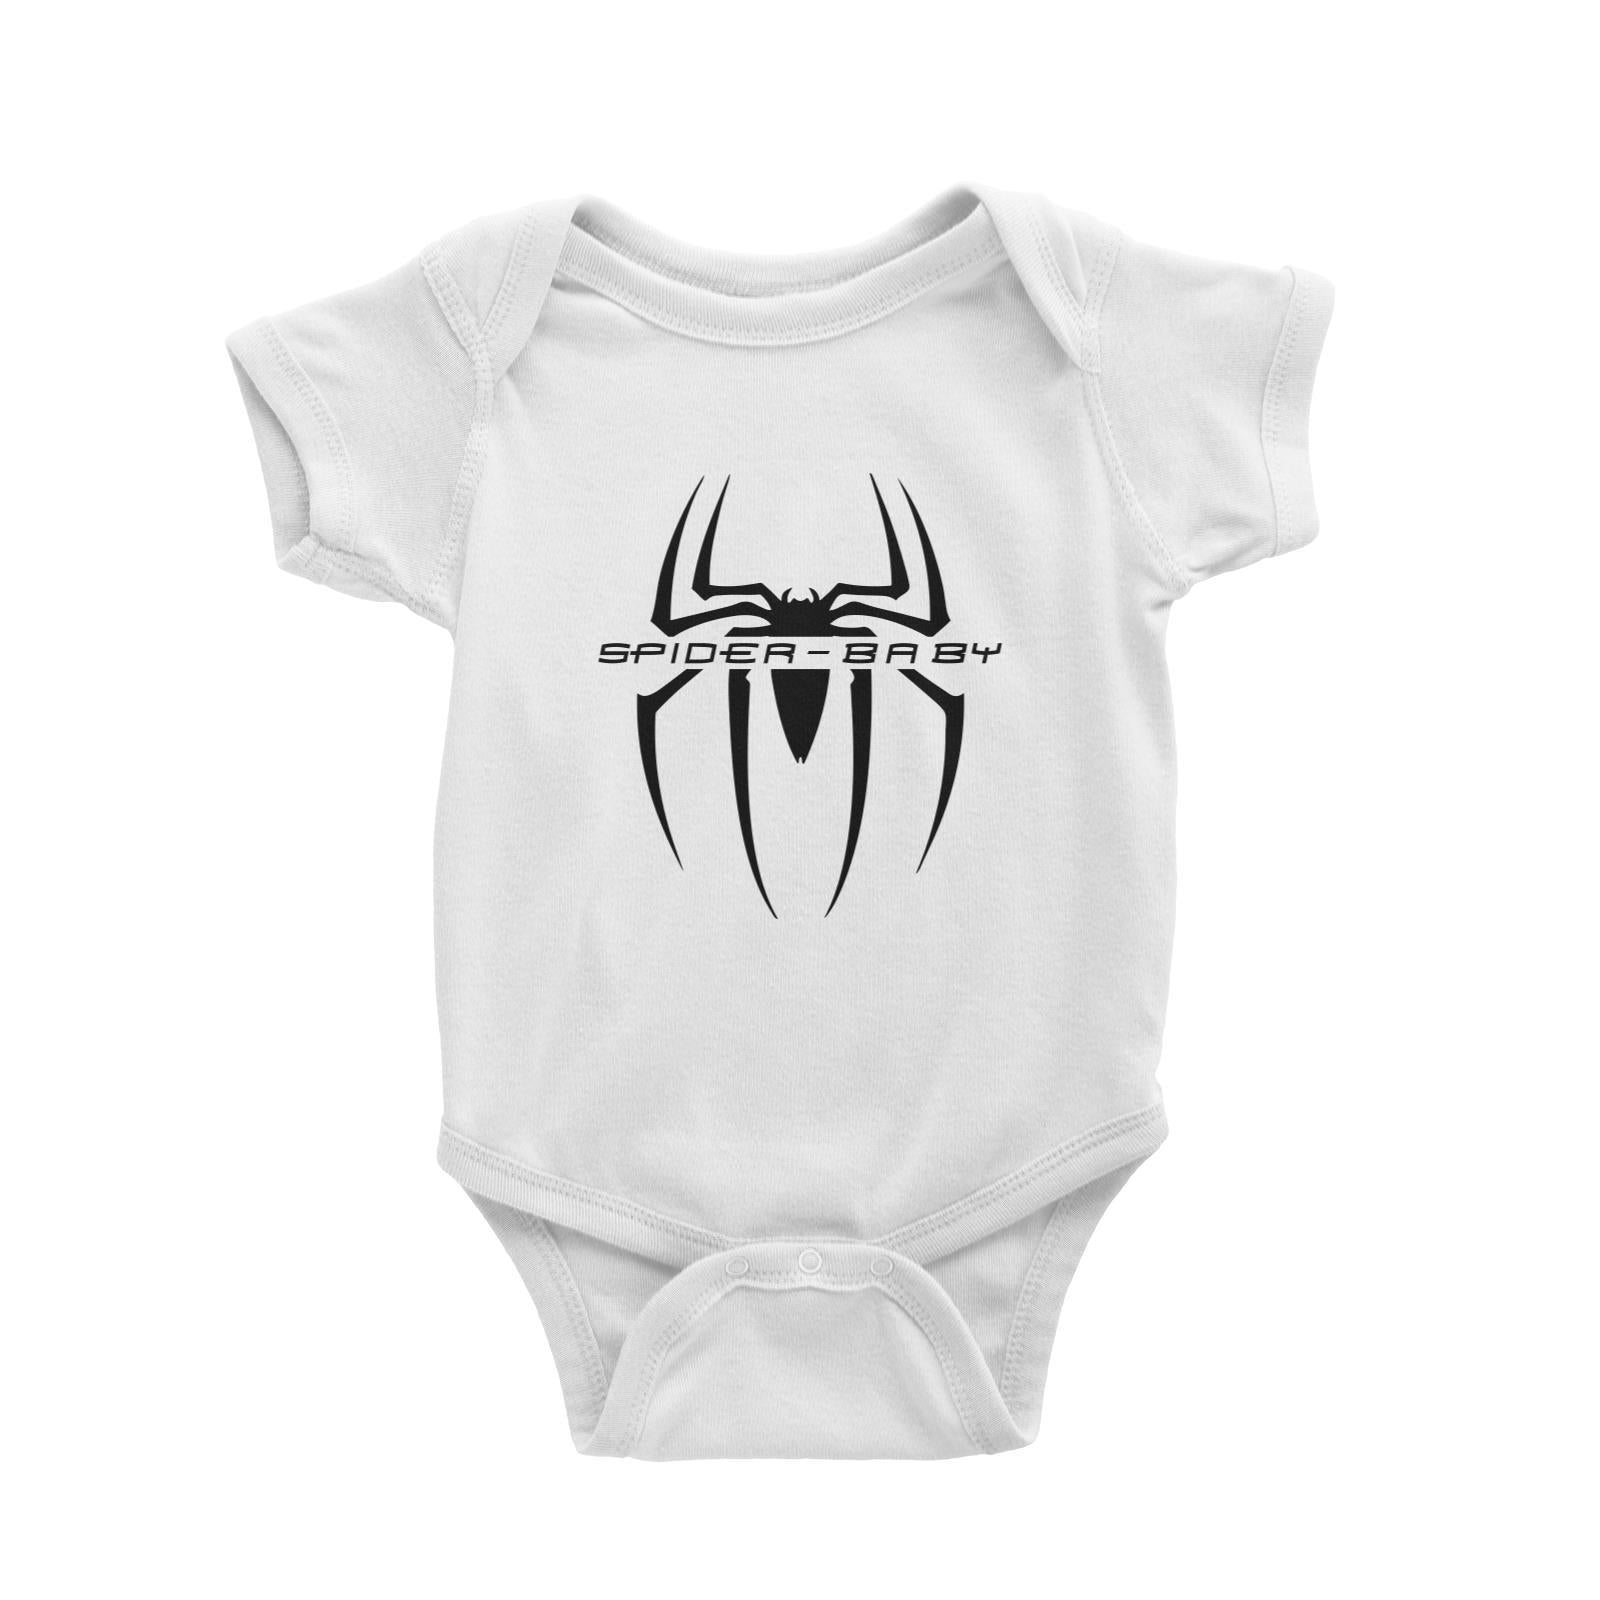 Superhero Spider Baby Baby Romper  Matching Family